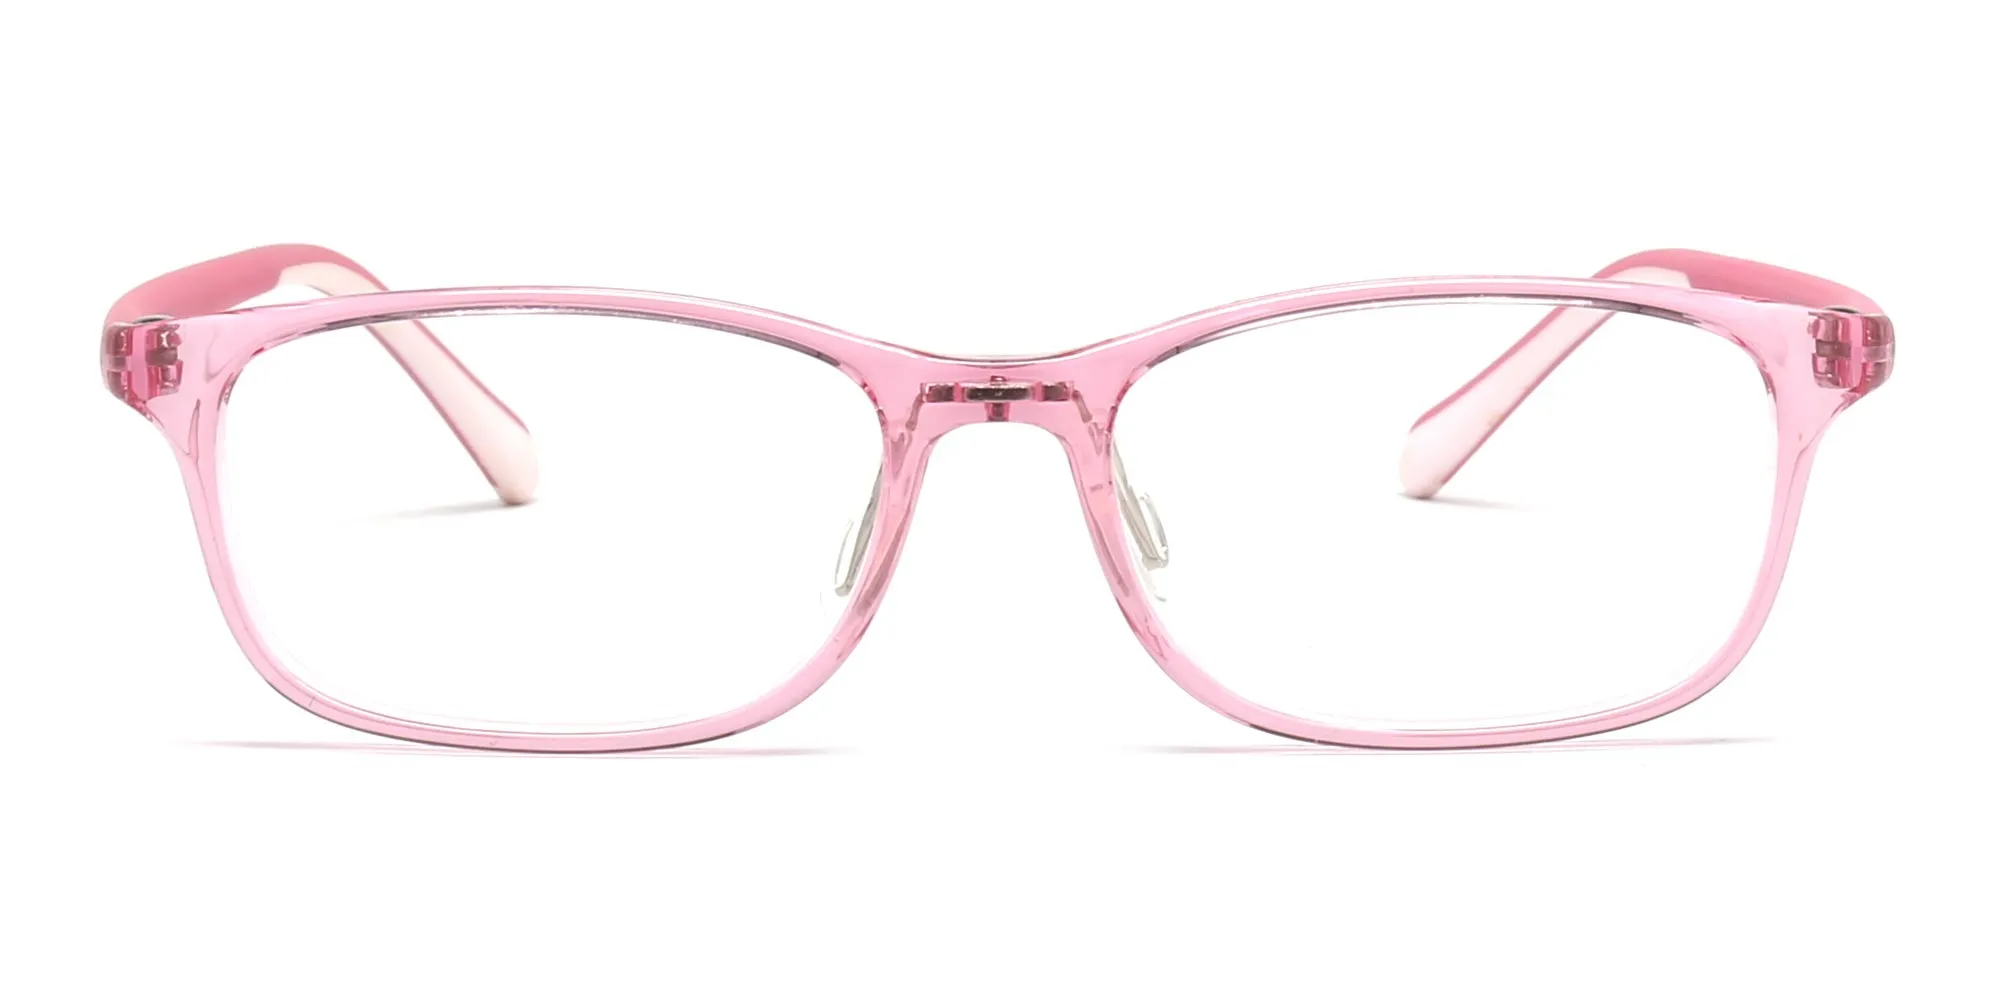 girls glasses frames